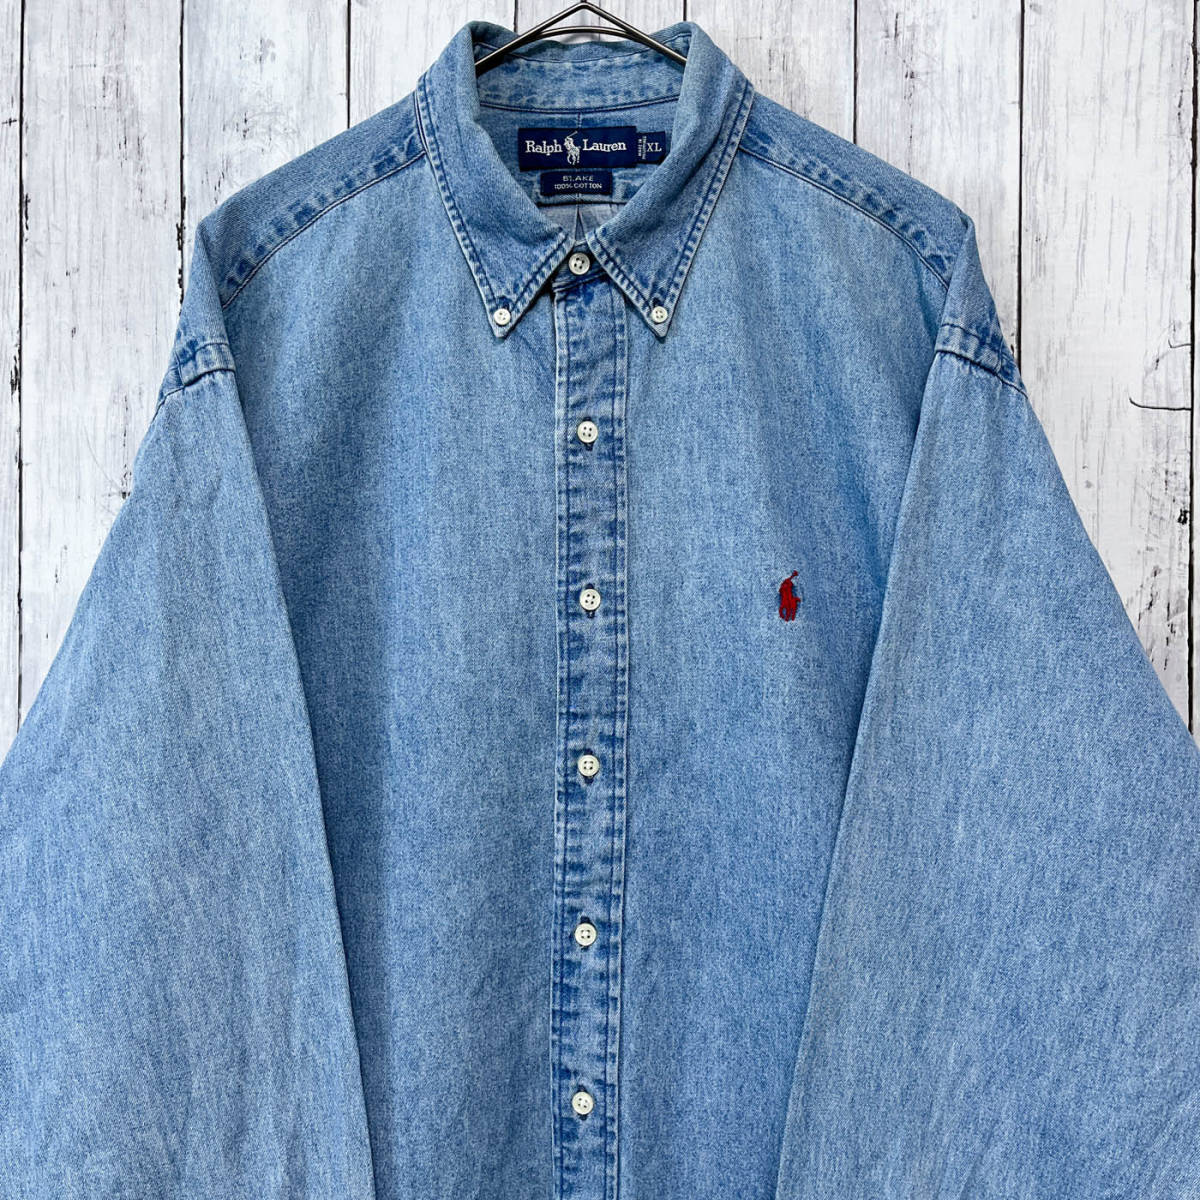  Ralph Lauren Ralph Lauren BLAKE Denim рубашка рубашка с длинным рукавом мужской one отметка хлопок 100% XL размер 5-239